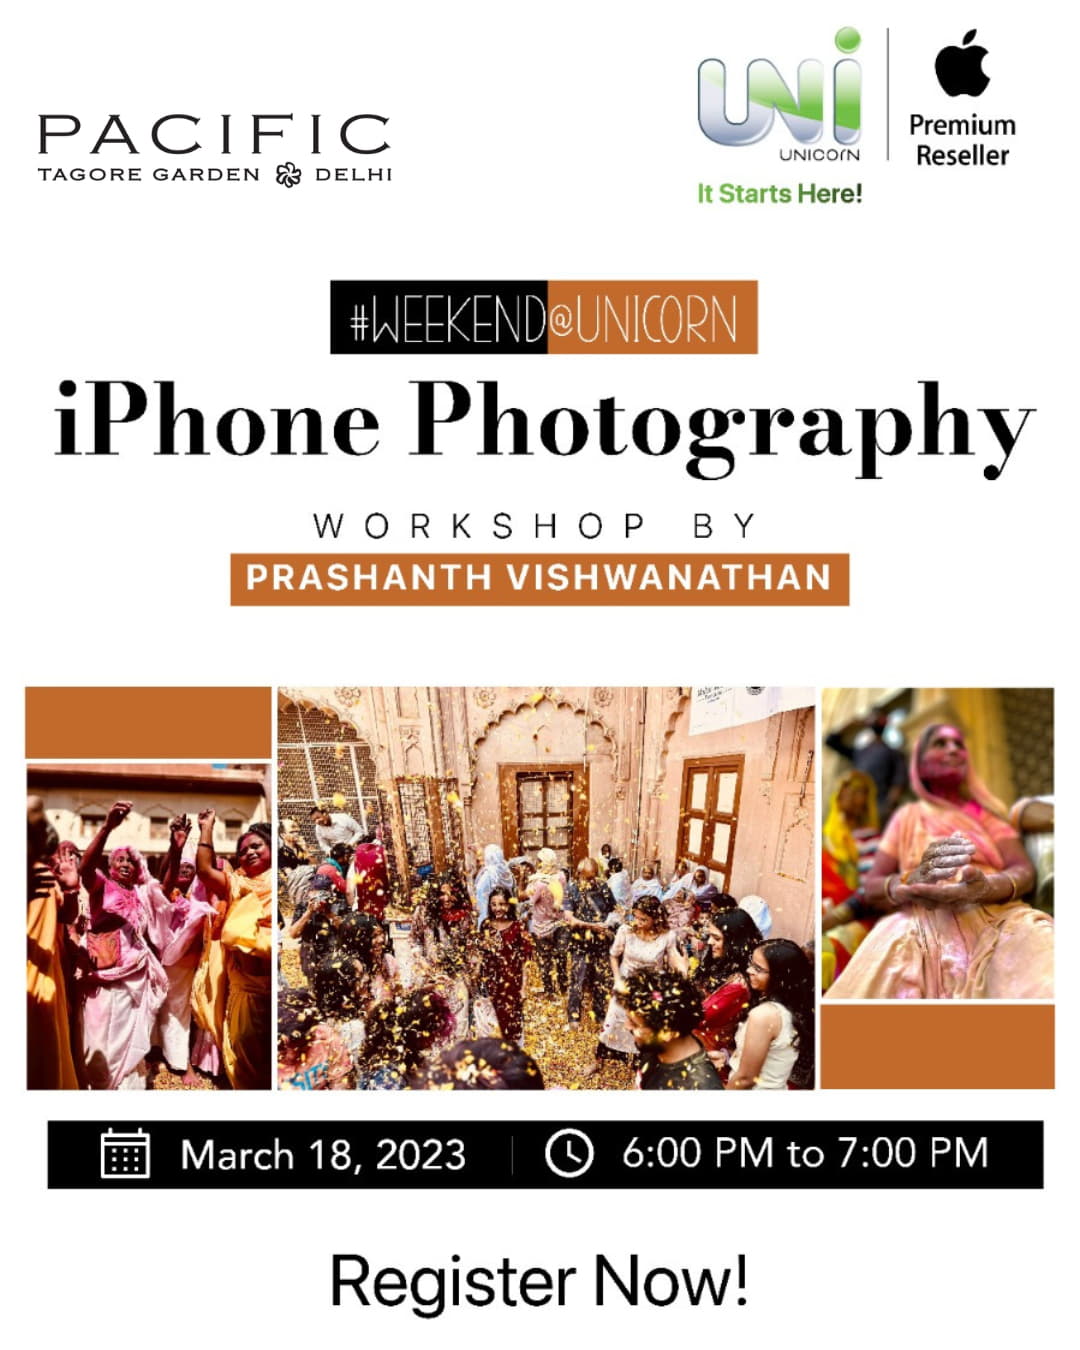 iPhone Photography Workshop by Prashanth Vishwanathan